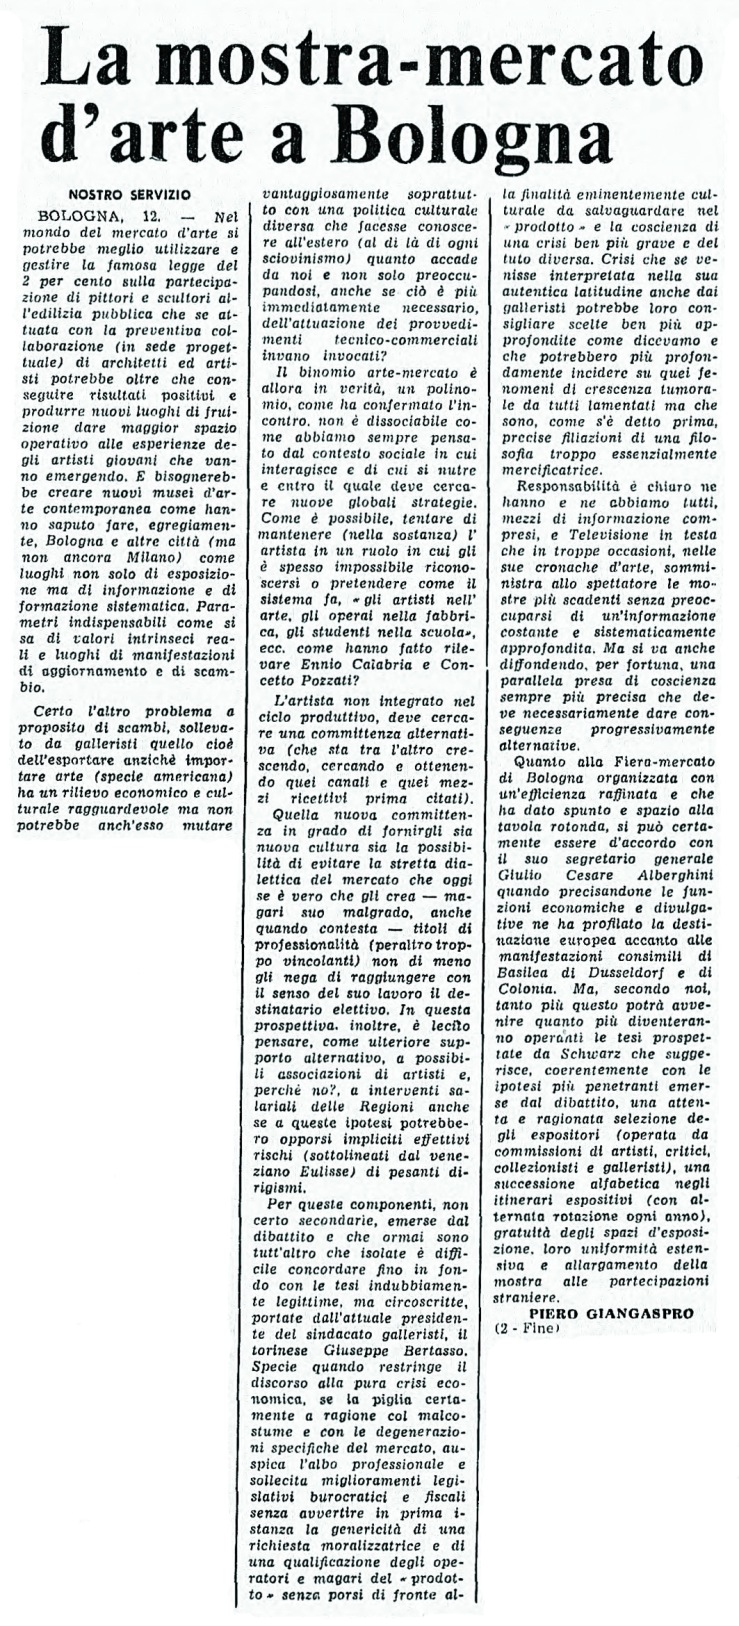 04 13 giugno 1975 mostra-mercato bologna 2-fine